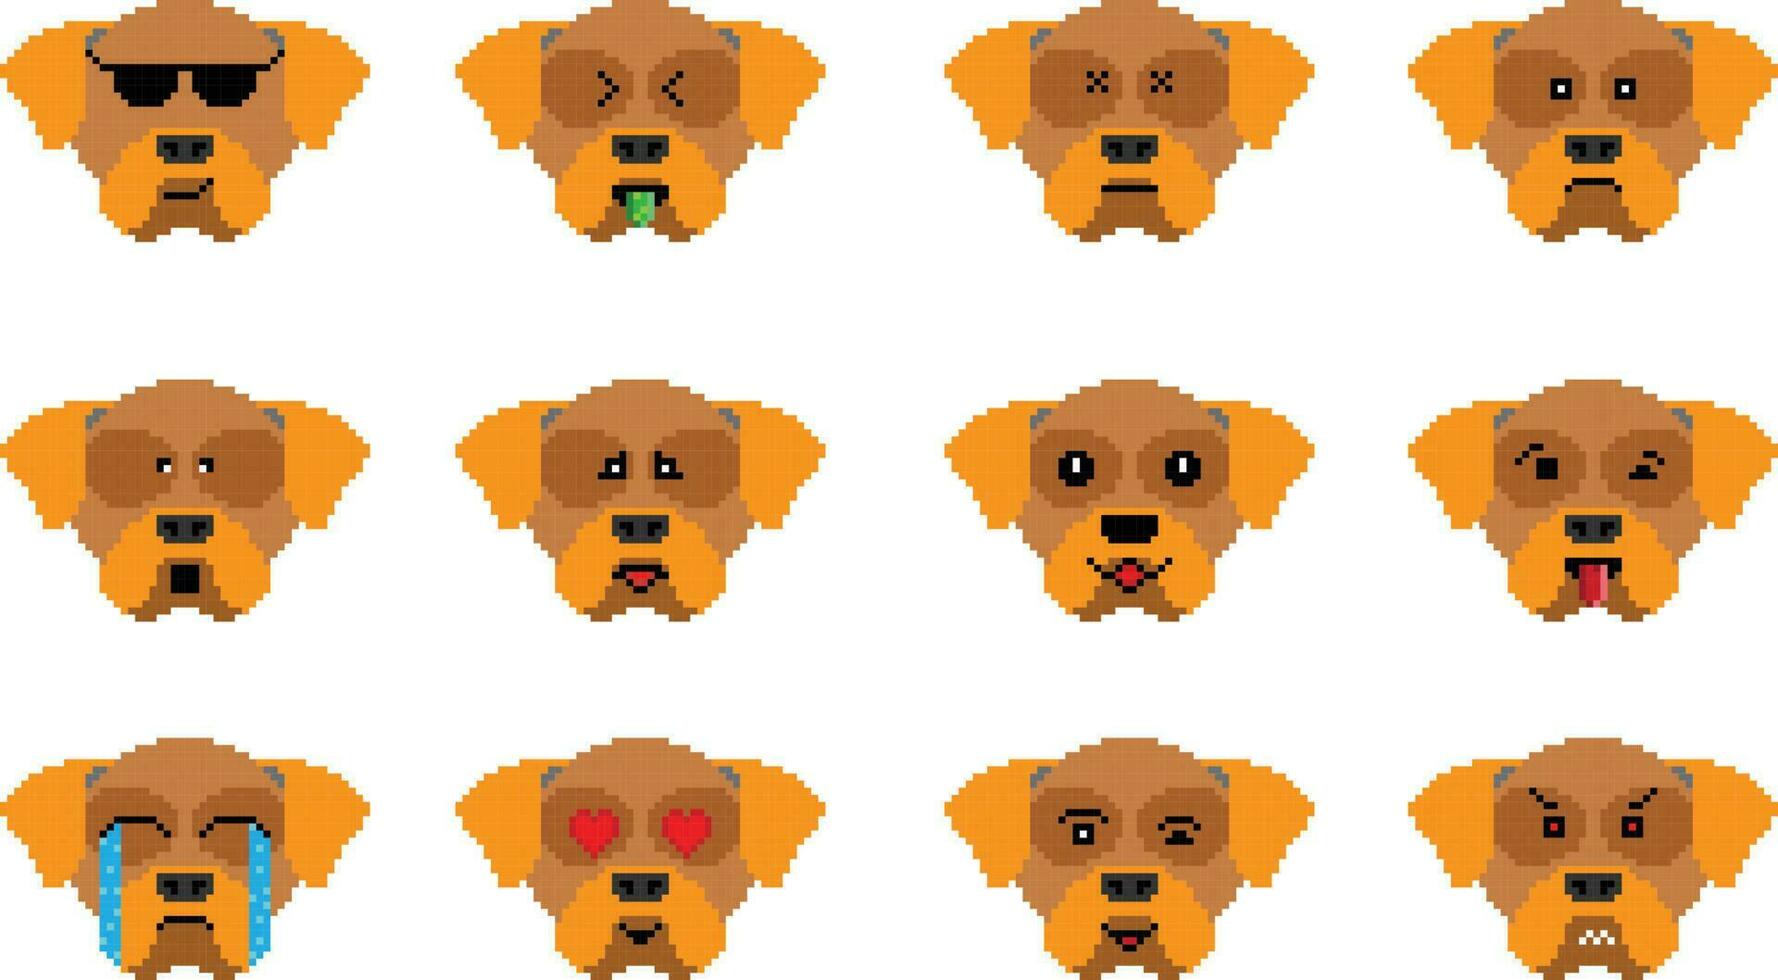 el perro píxel emoji emoticon colección vector